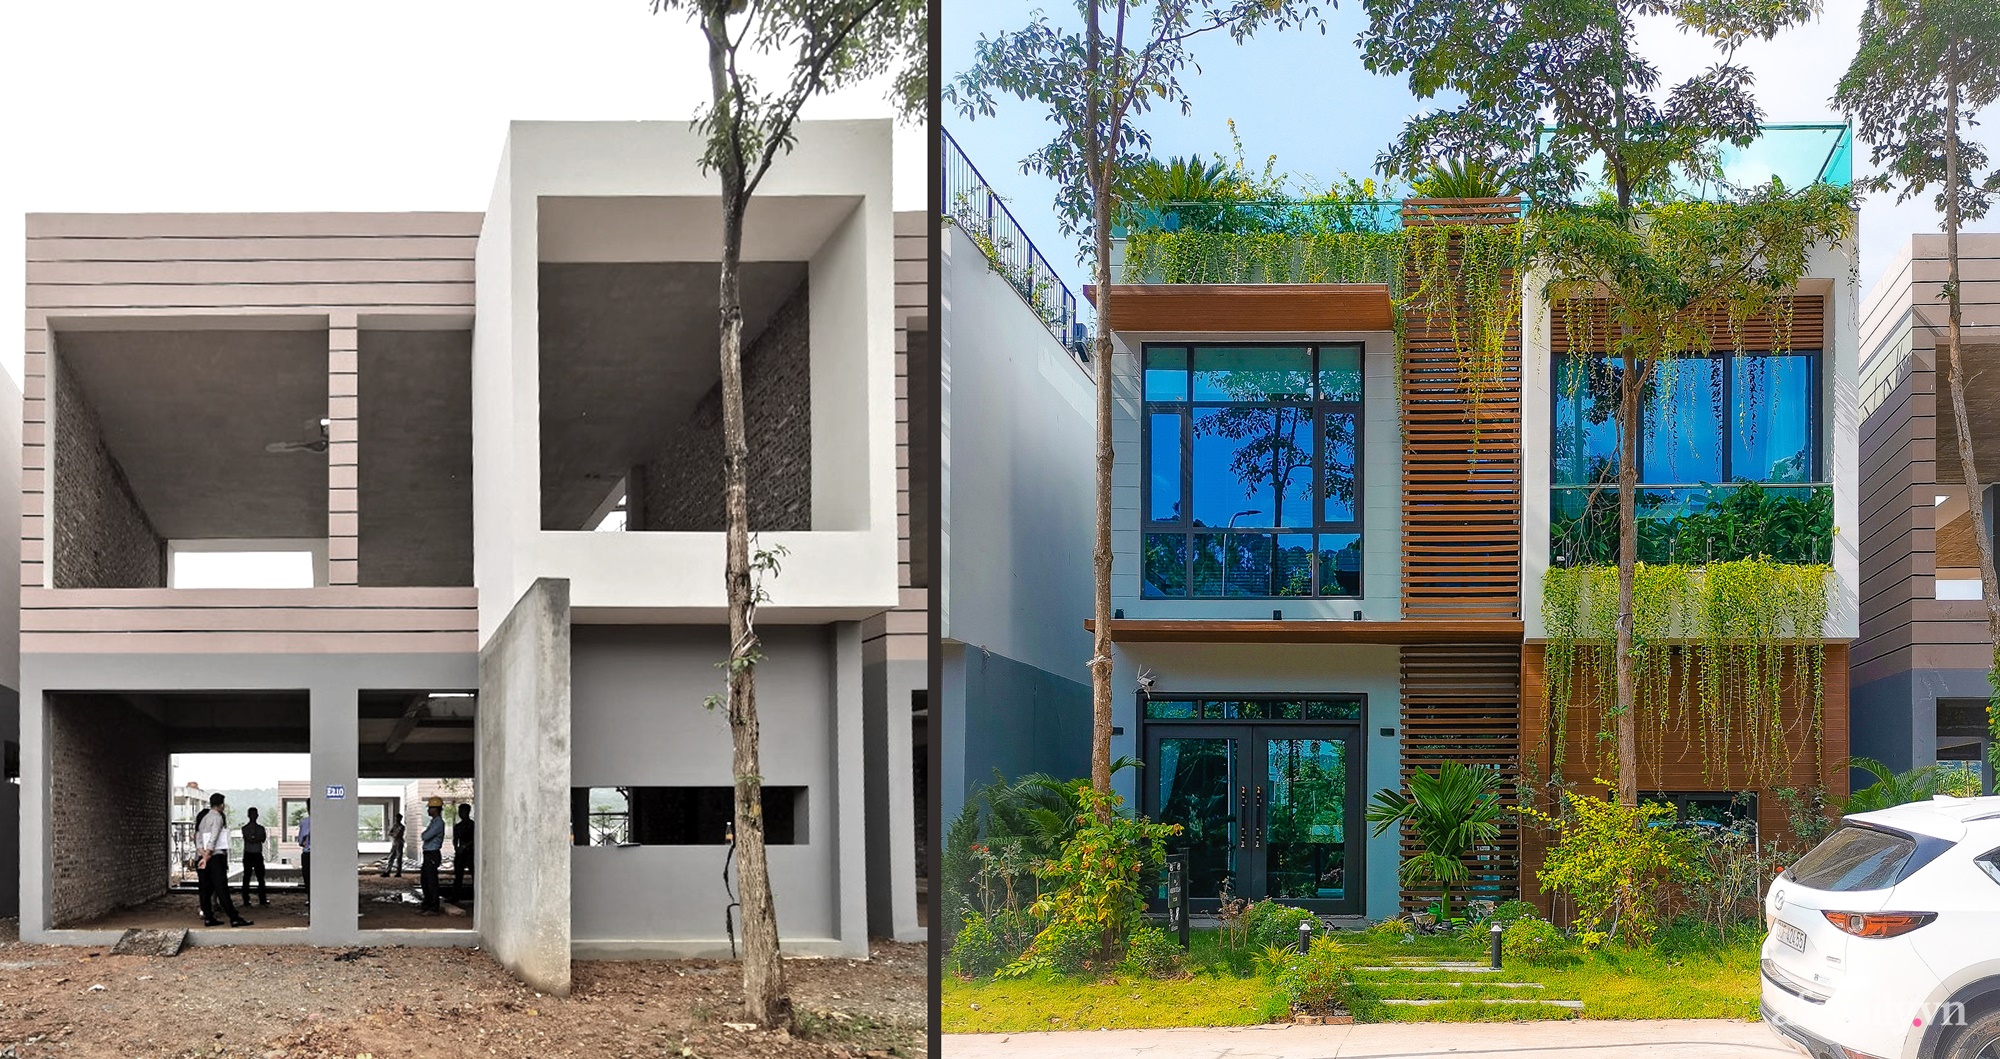 Căn nhà nhiều cây xanh với mảnh vườn bé xinh ở ngoại thành Hà Nội có chi phí hoàn thiện 3 tỷ đồng - Ảnh 3.